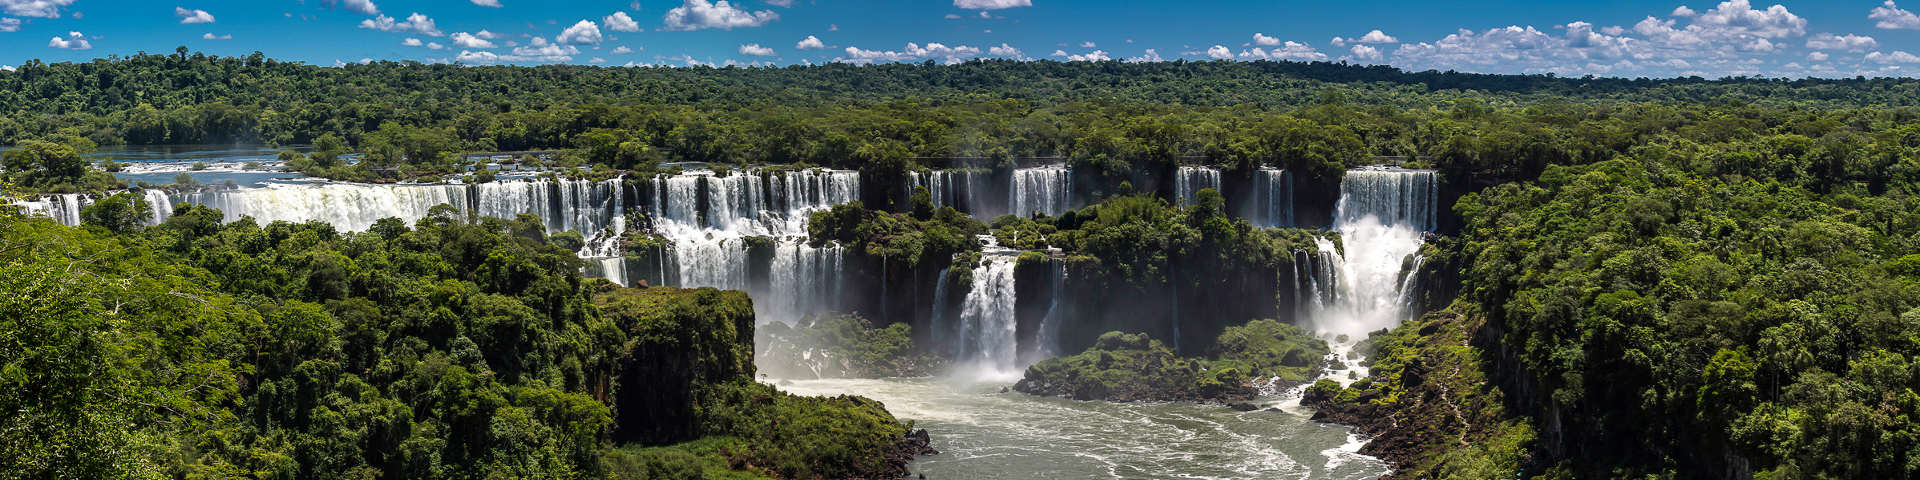 Iguazu hero